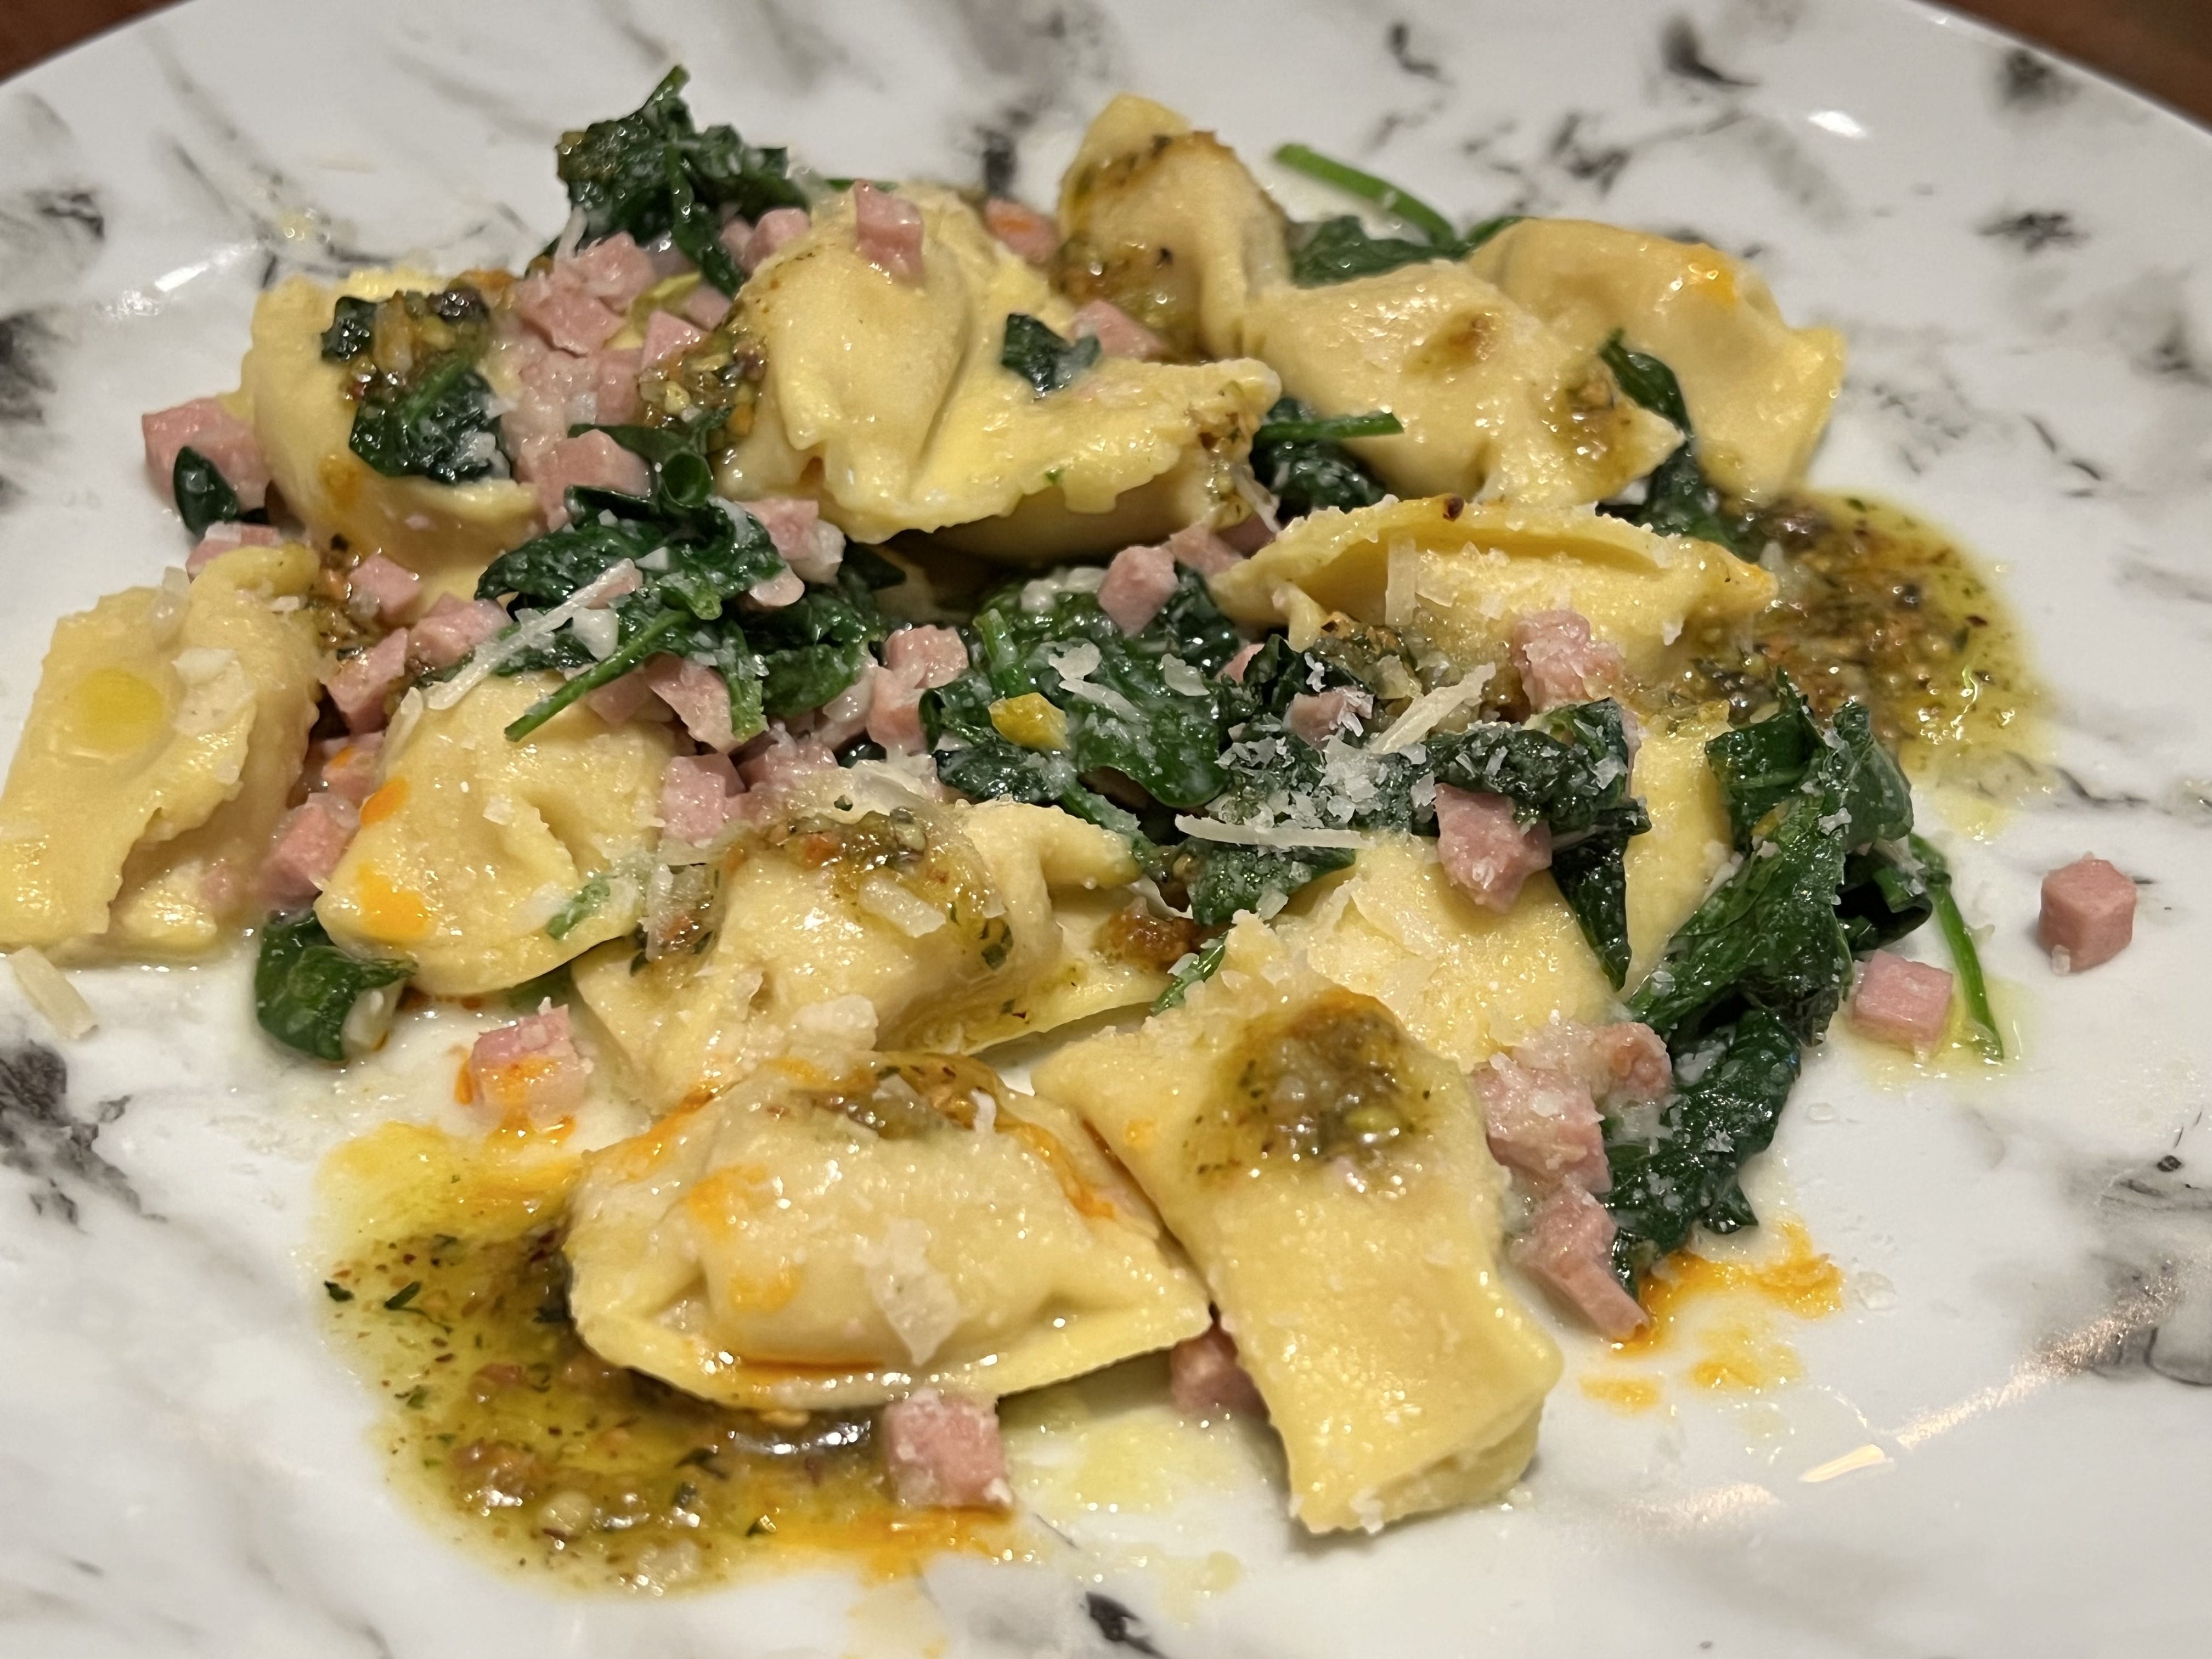 Mortadella Agnolotti with spinach, pistachio pesto, and parmesan lunch portion